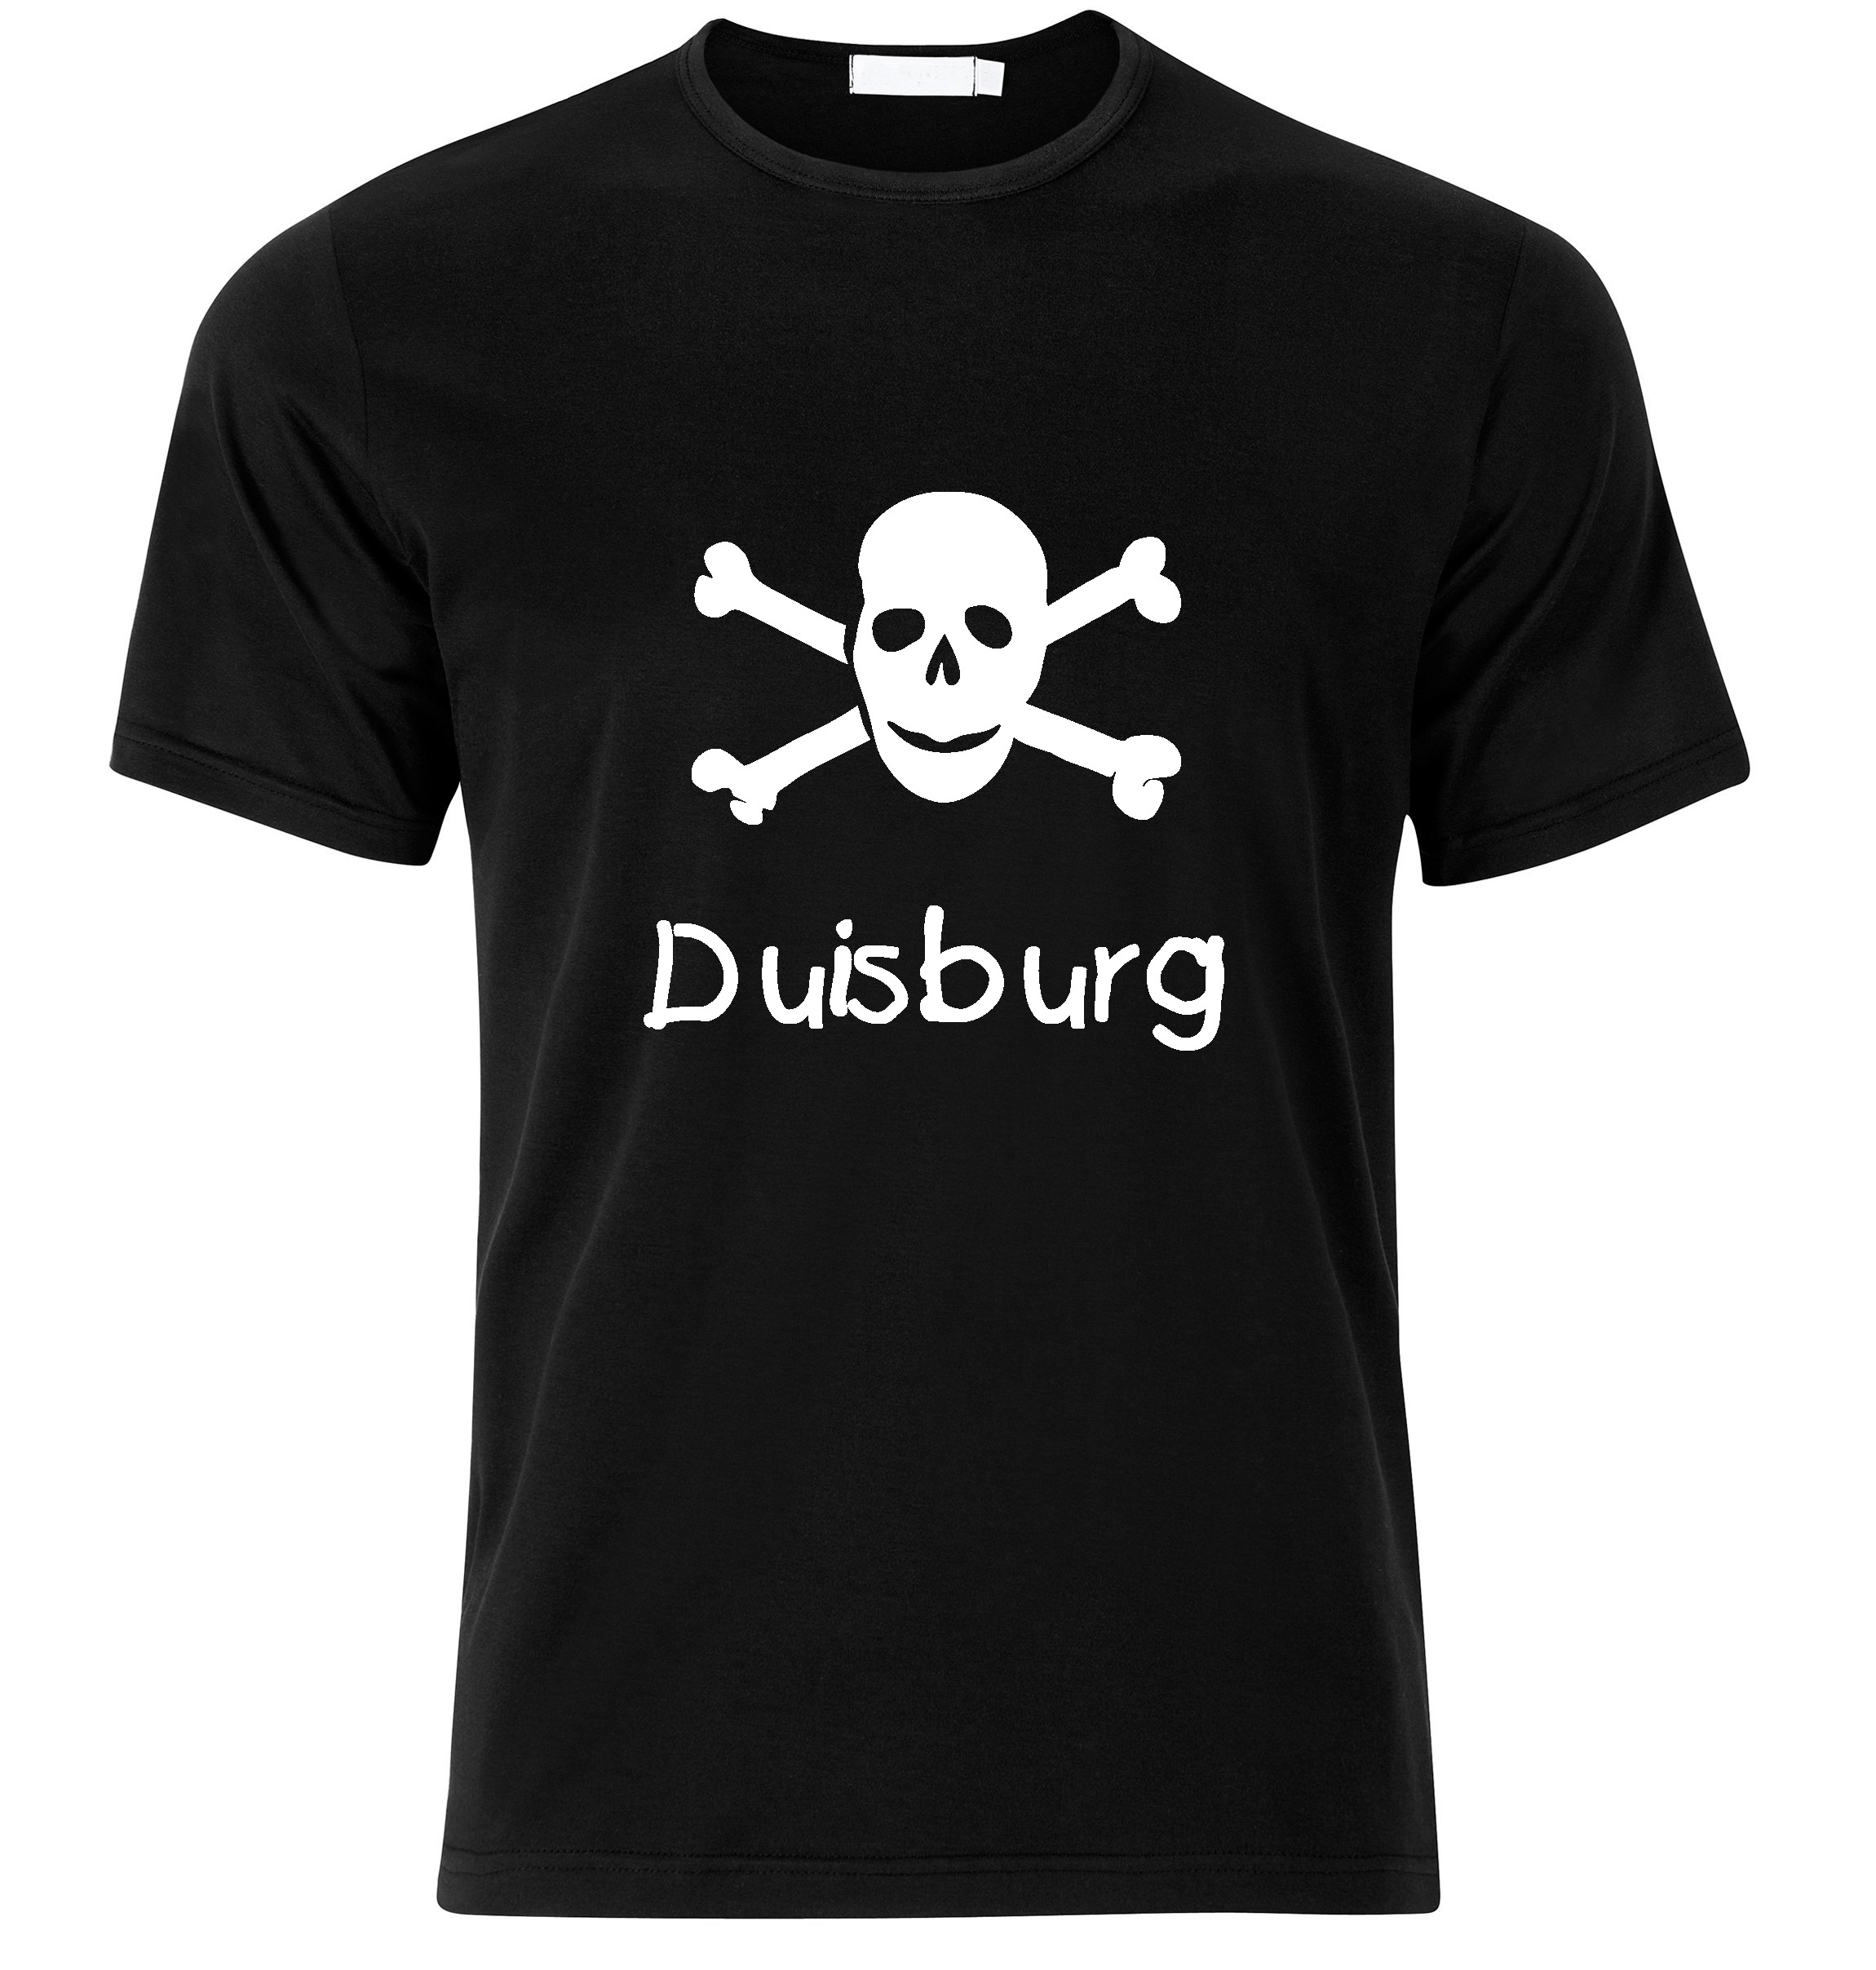 T-Shirt Duisburg Jolly Roger, Totenkopf